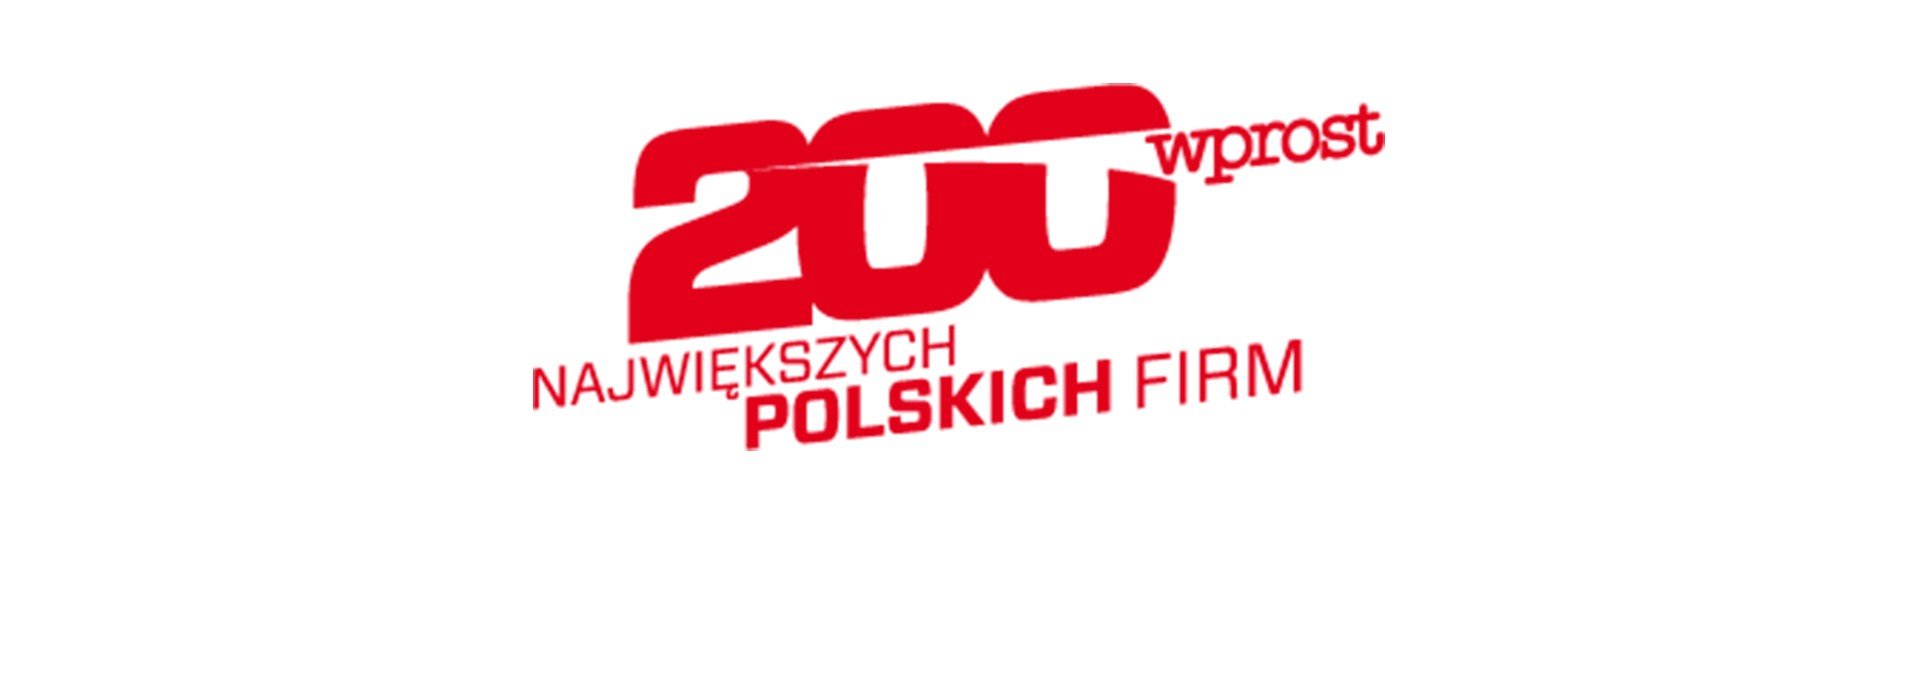 Drutex progresse dans le classement des 200 plus grandes entreprises polonaises du magazine « Wprost »